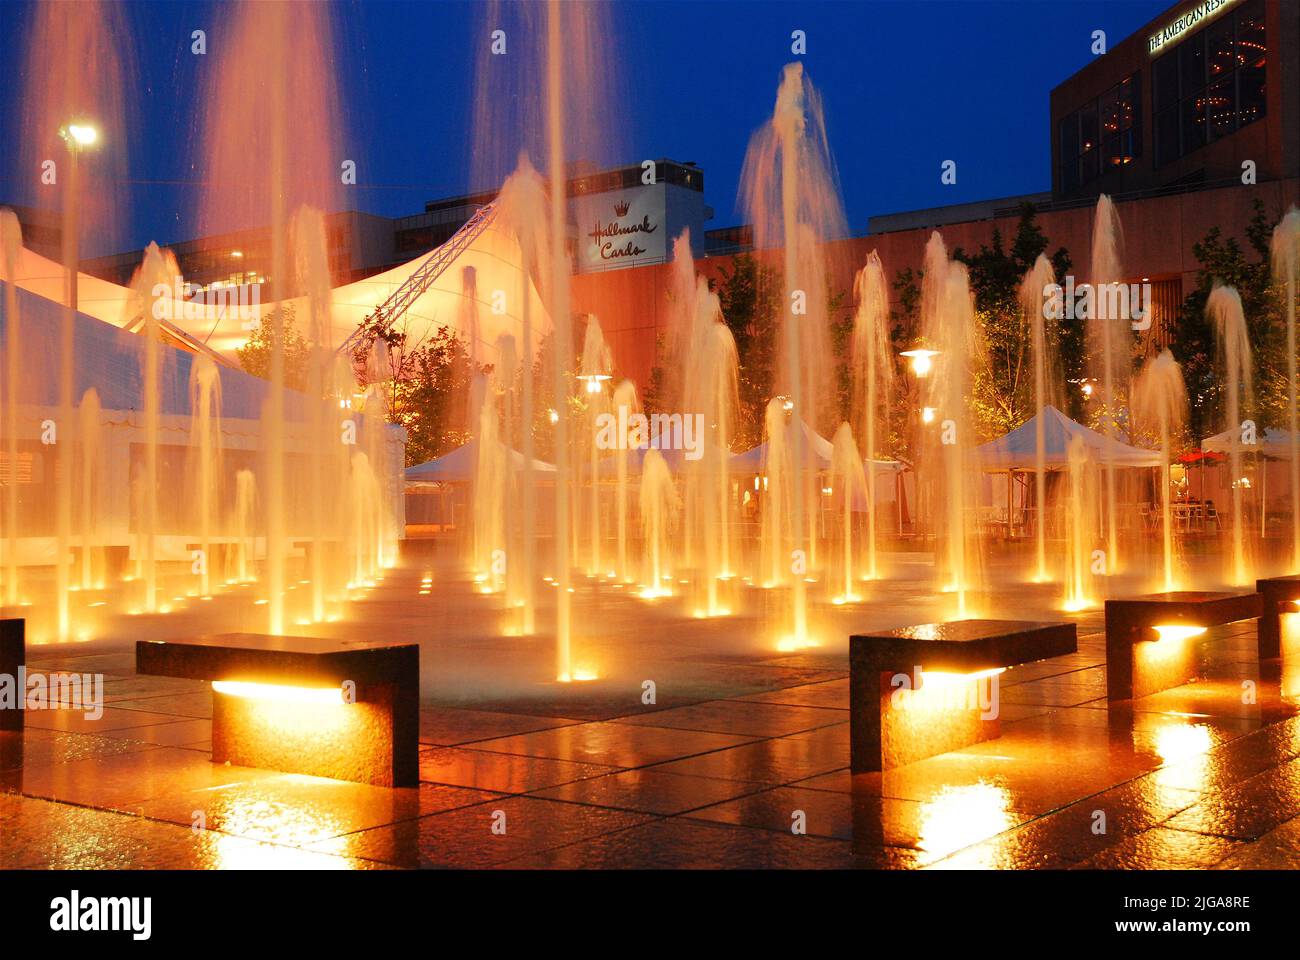 Les fontaines d'eau de Crown Plaza à Kansas City, Missouri, sont illuminées au crépuscule et se reflètent dans le sol humide de la plaza Banque D'Images